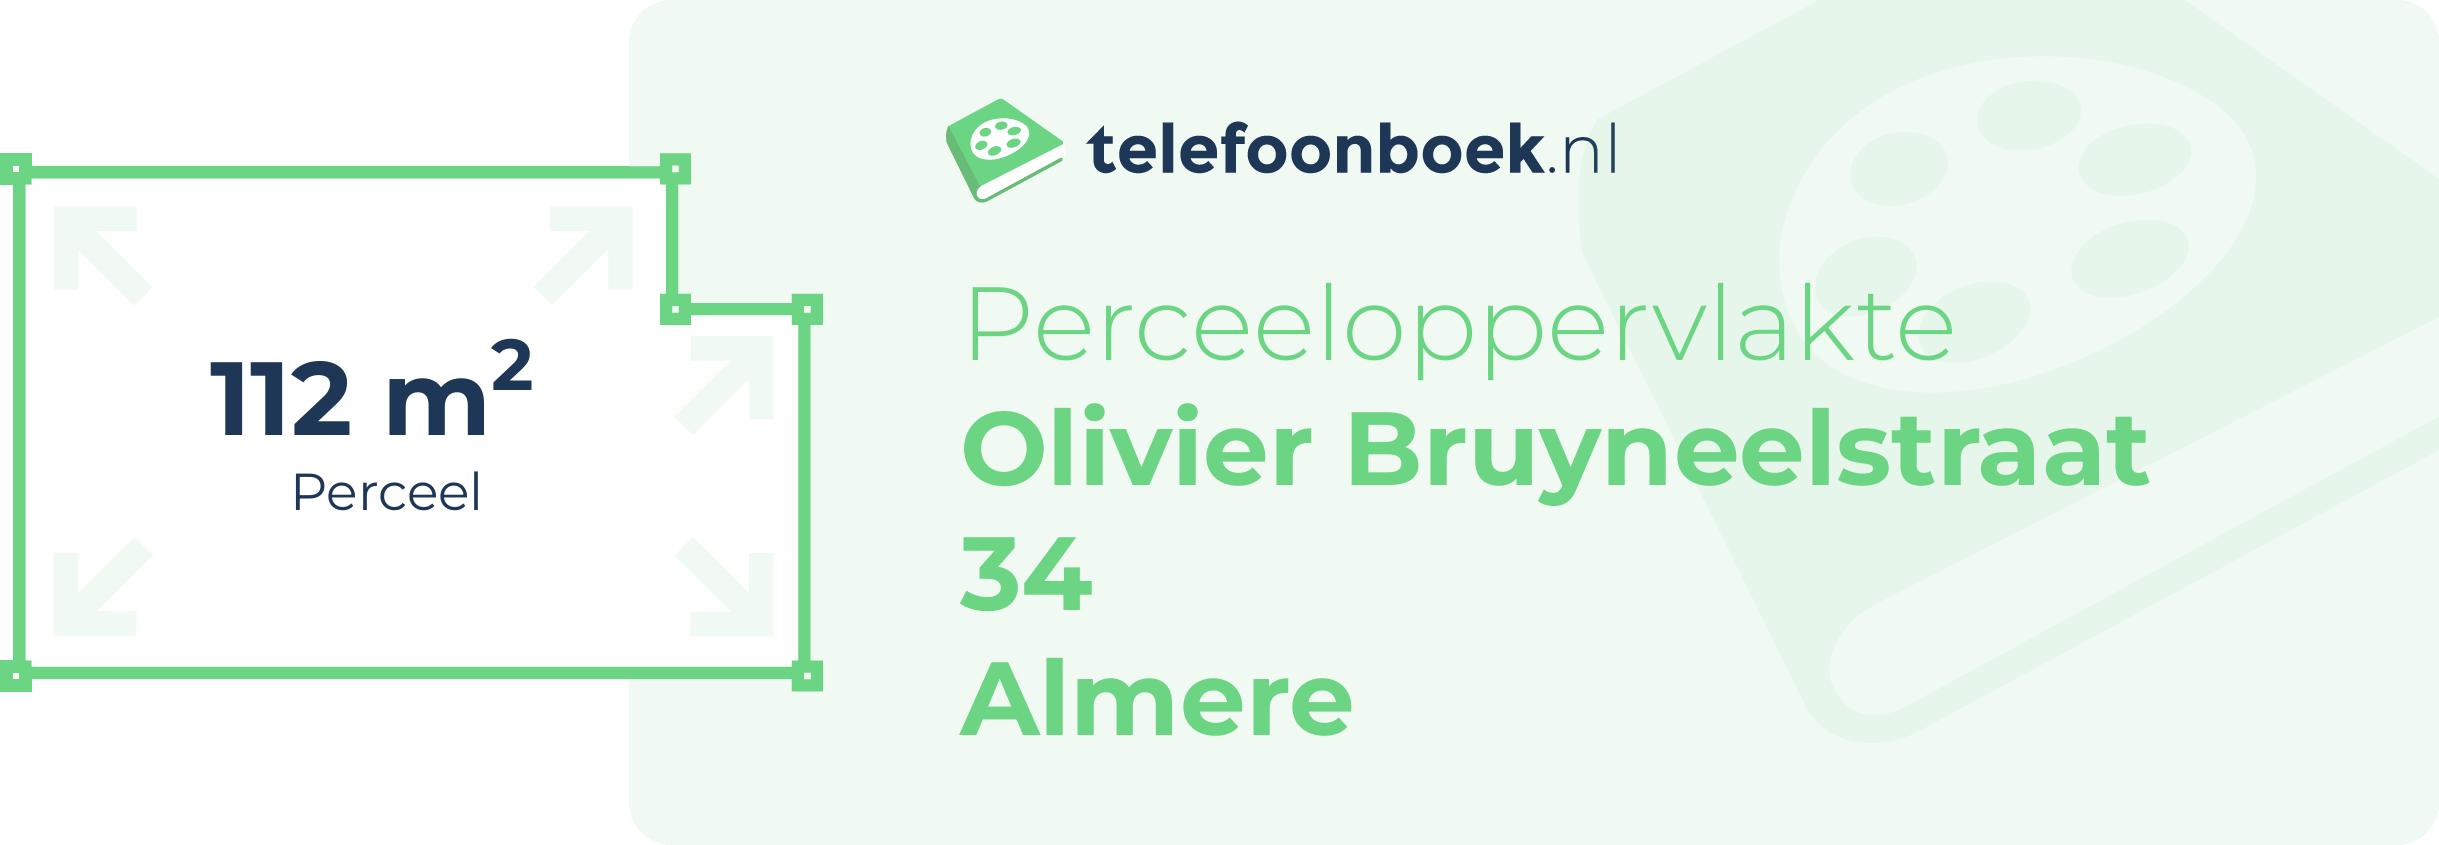 Perceeloppervlakte Olivier Bruyneelstraat 34 Almere